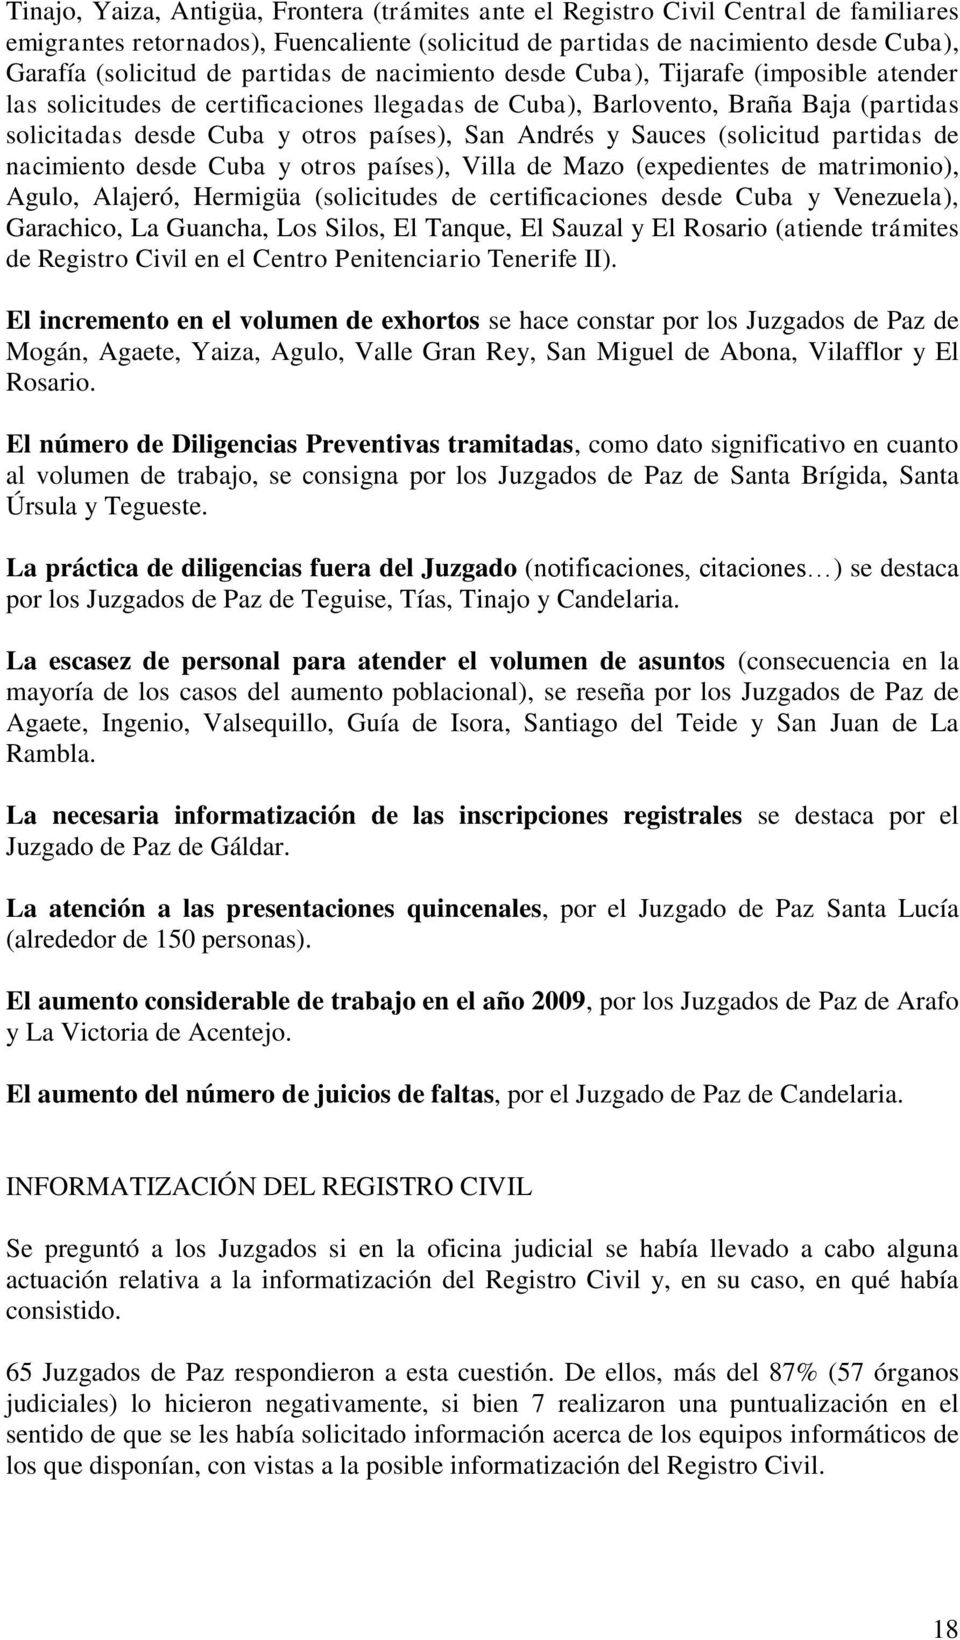 Andrés y Sauces (solicitud partidas de nacimiento desde Cuba y otros países), Villa de Mazo (expedientes de matrimonio), Agulo, Alajeró, Hermigüa (solicitudes de certificaciones desde Cuba y